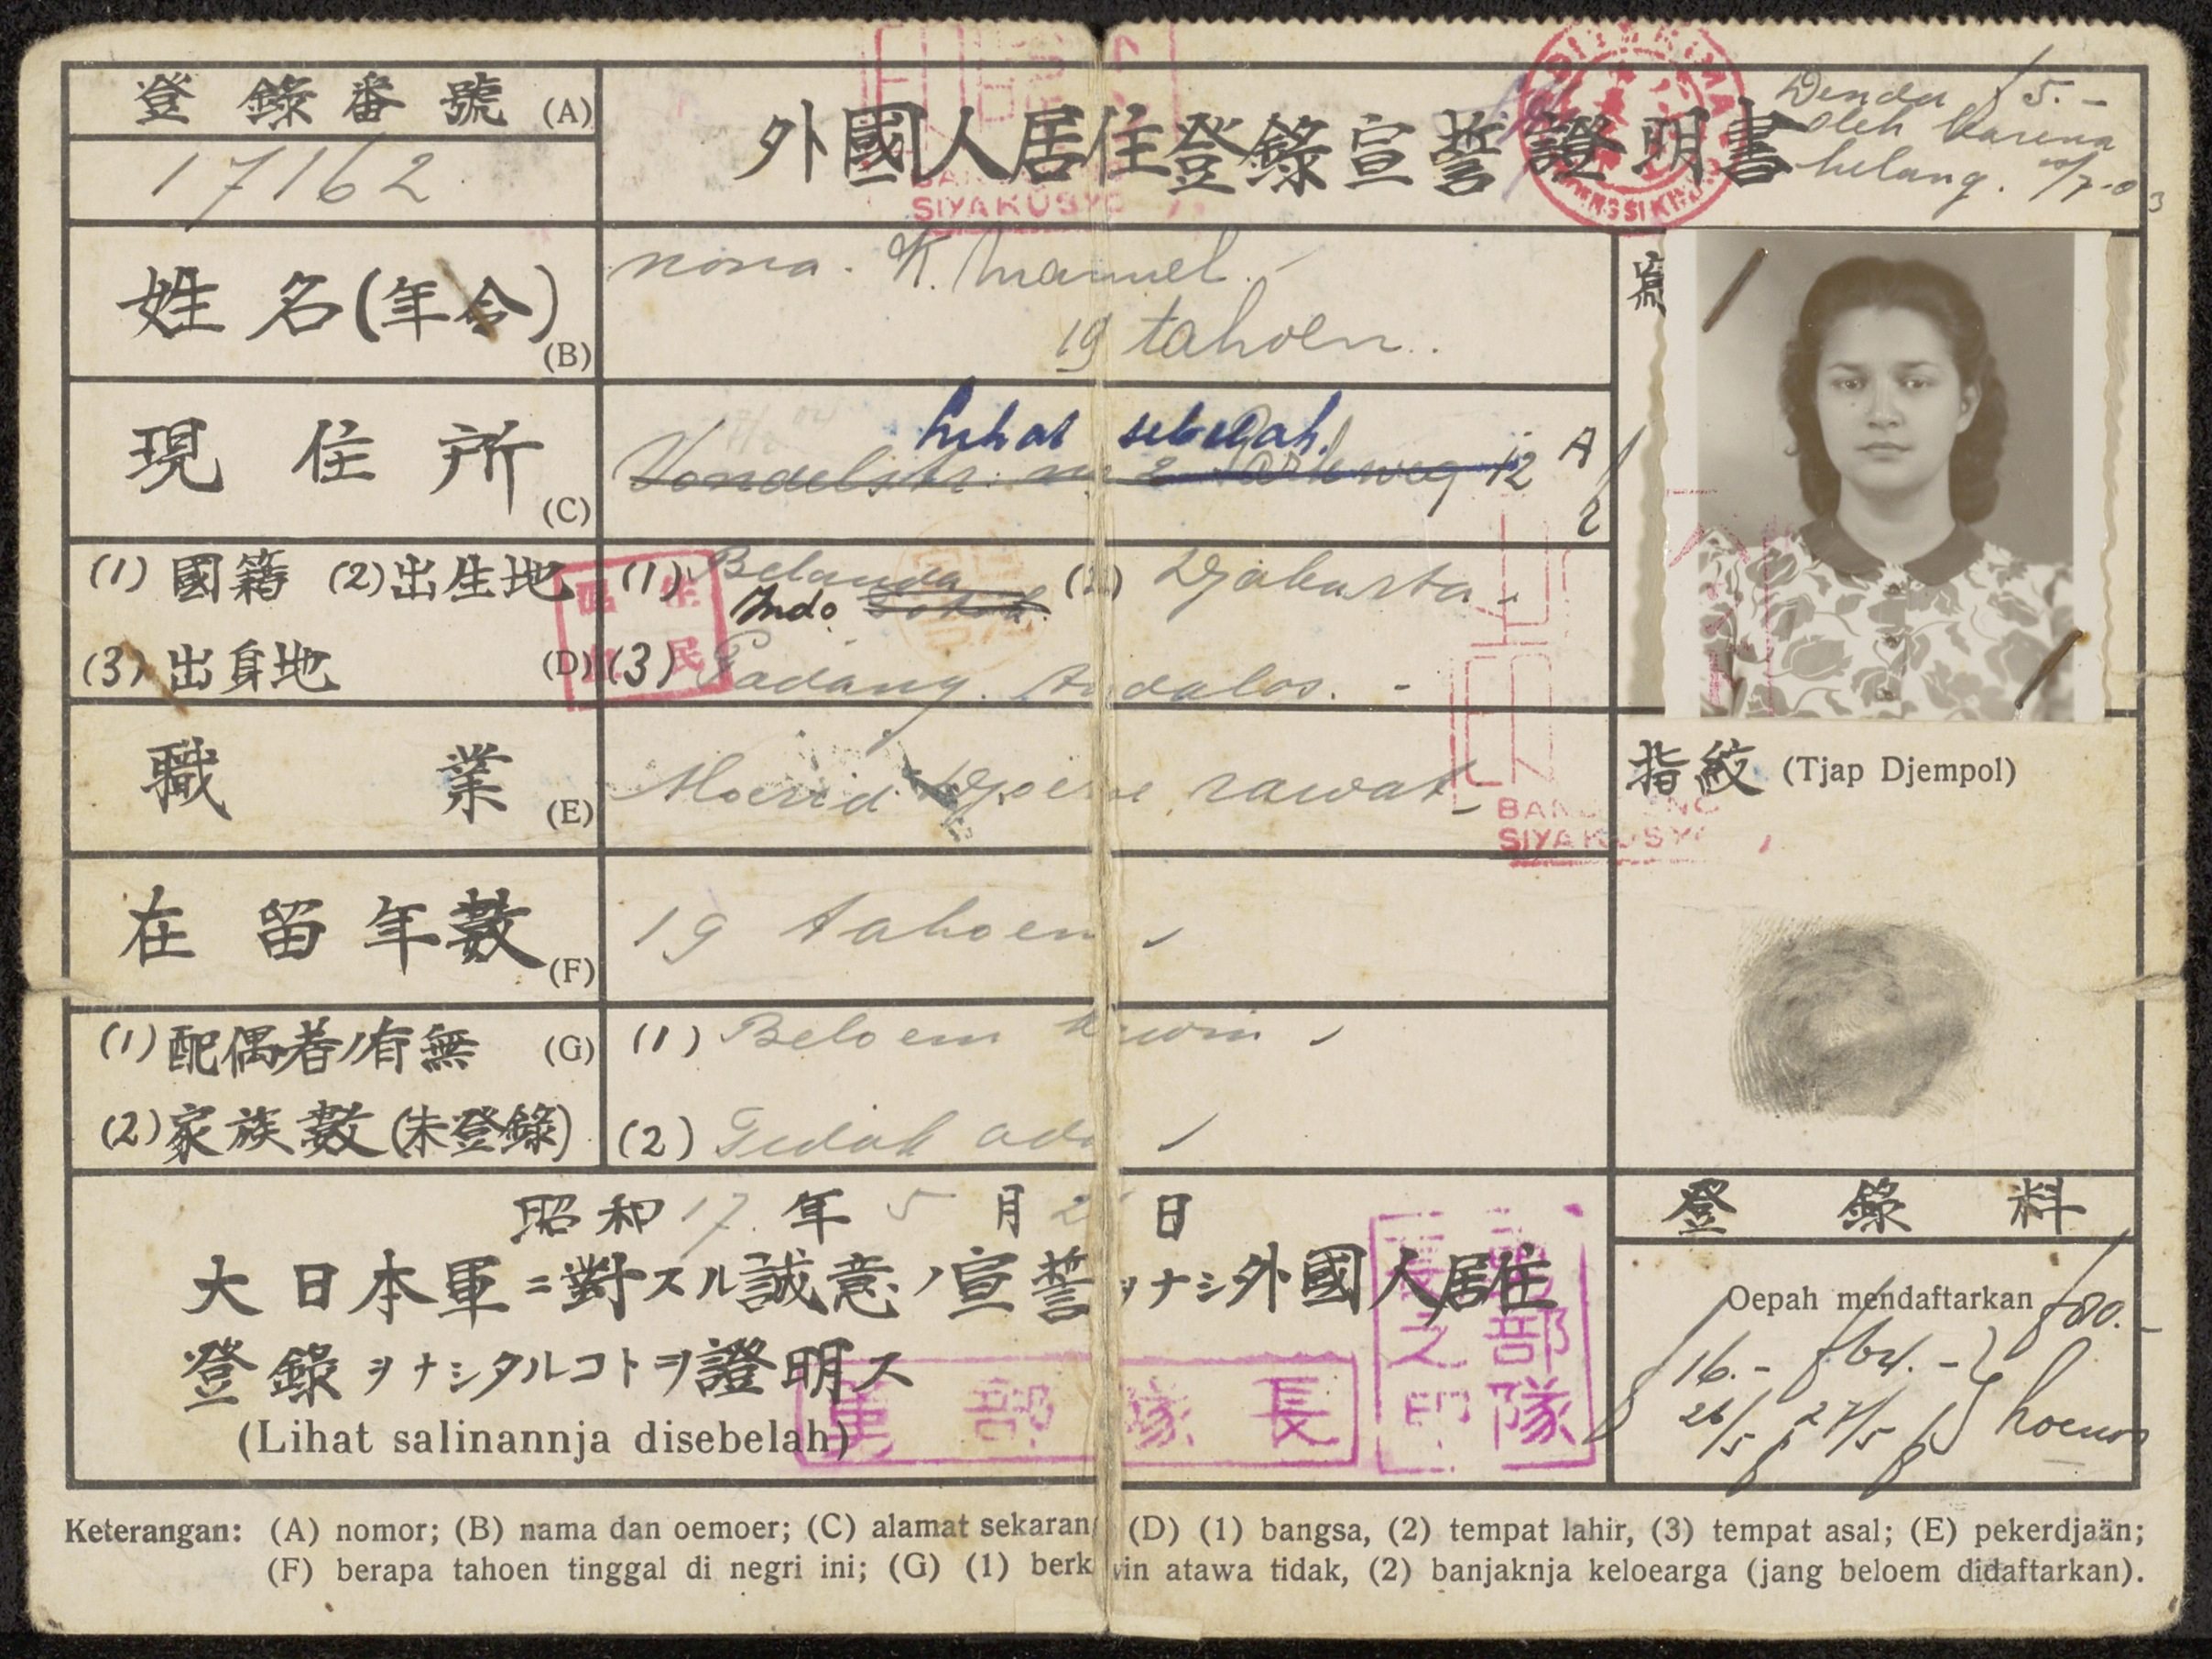 Voorbeeld van een pendafteran (Japans identiteitsbewijs).